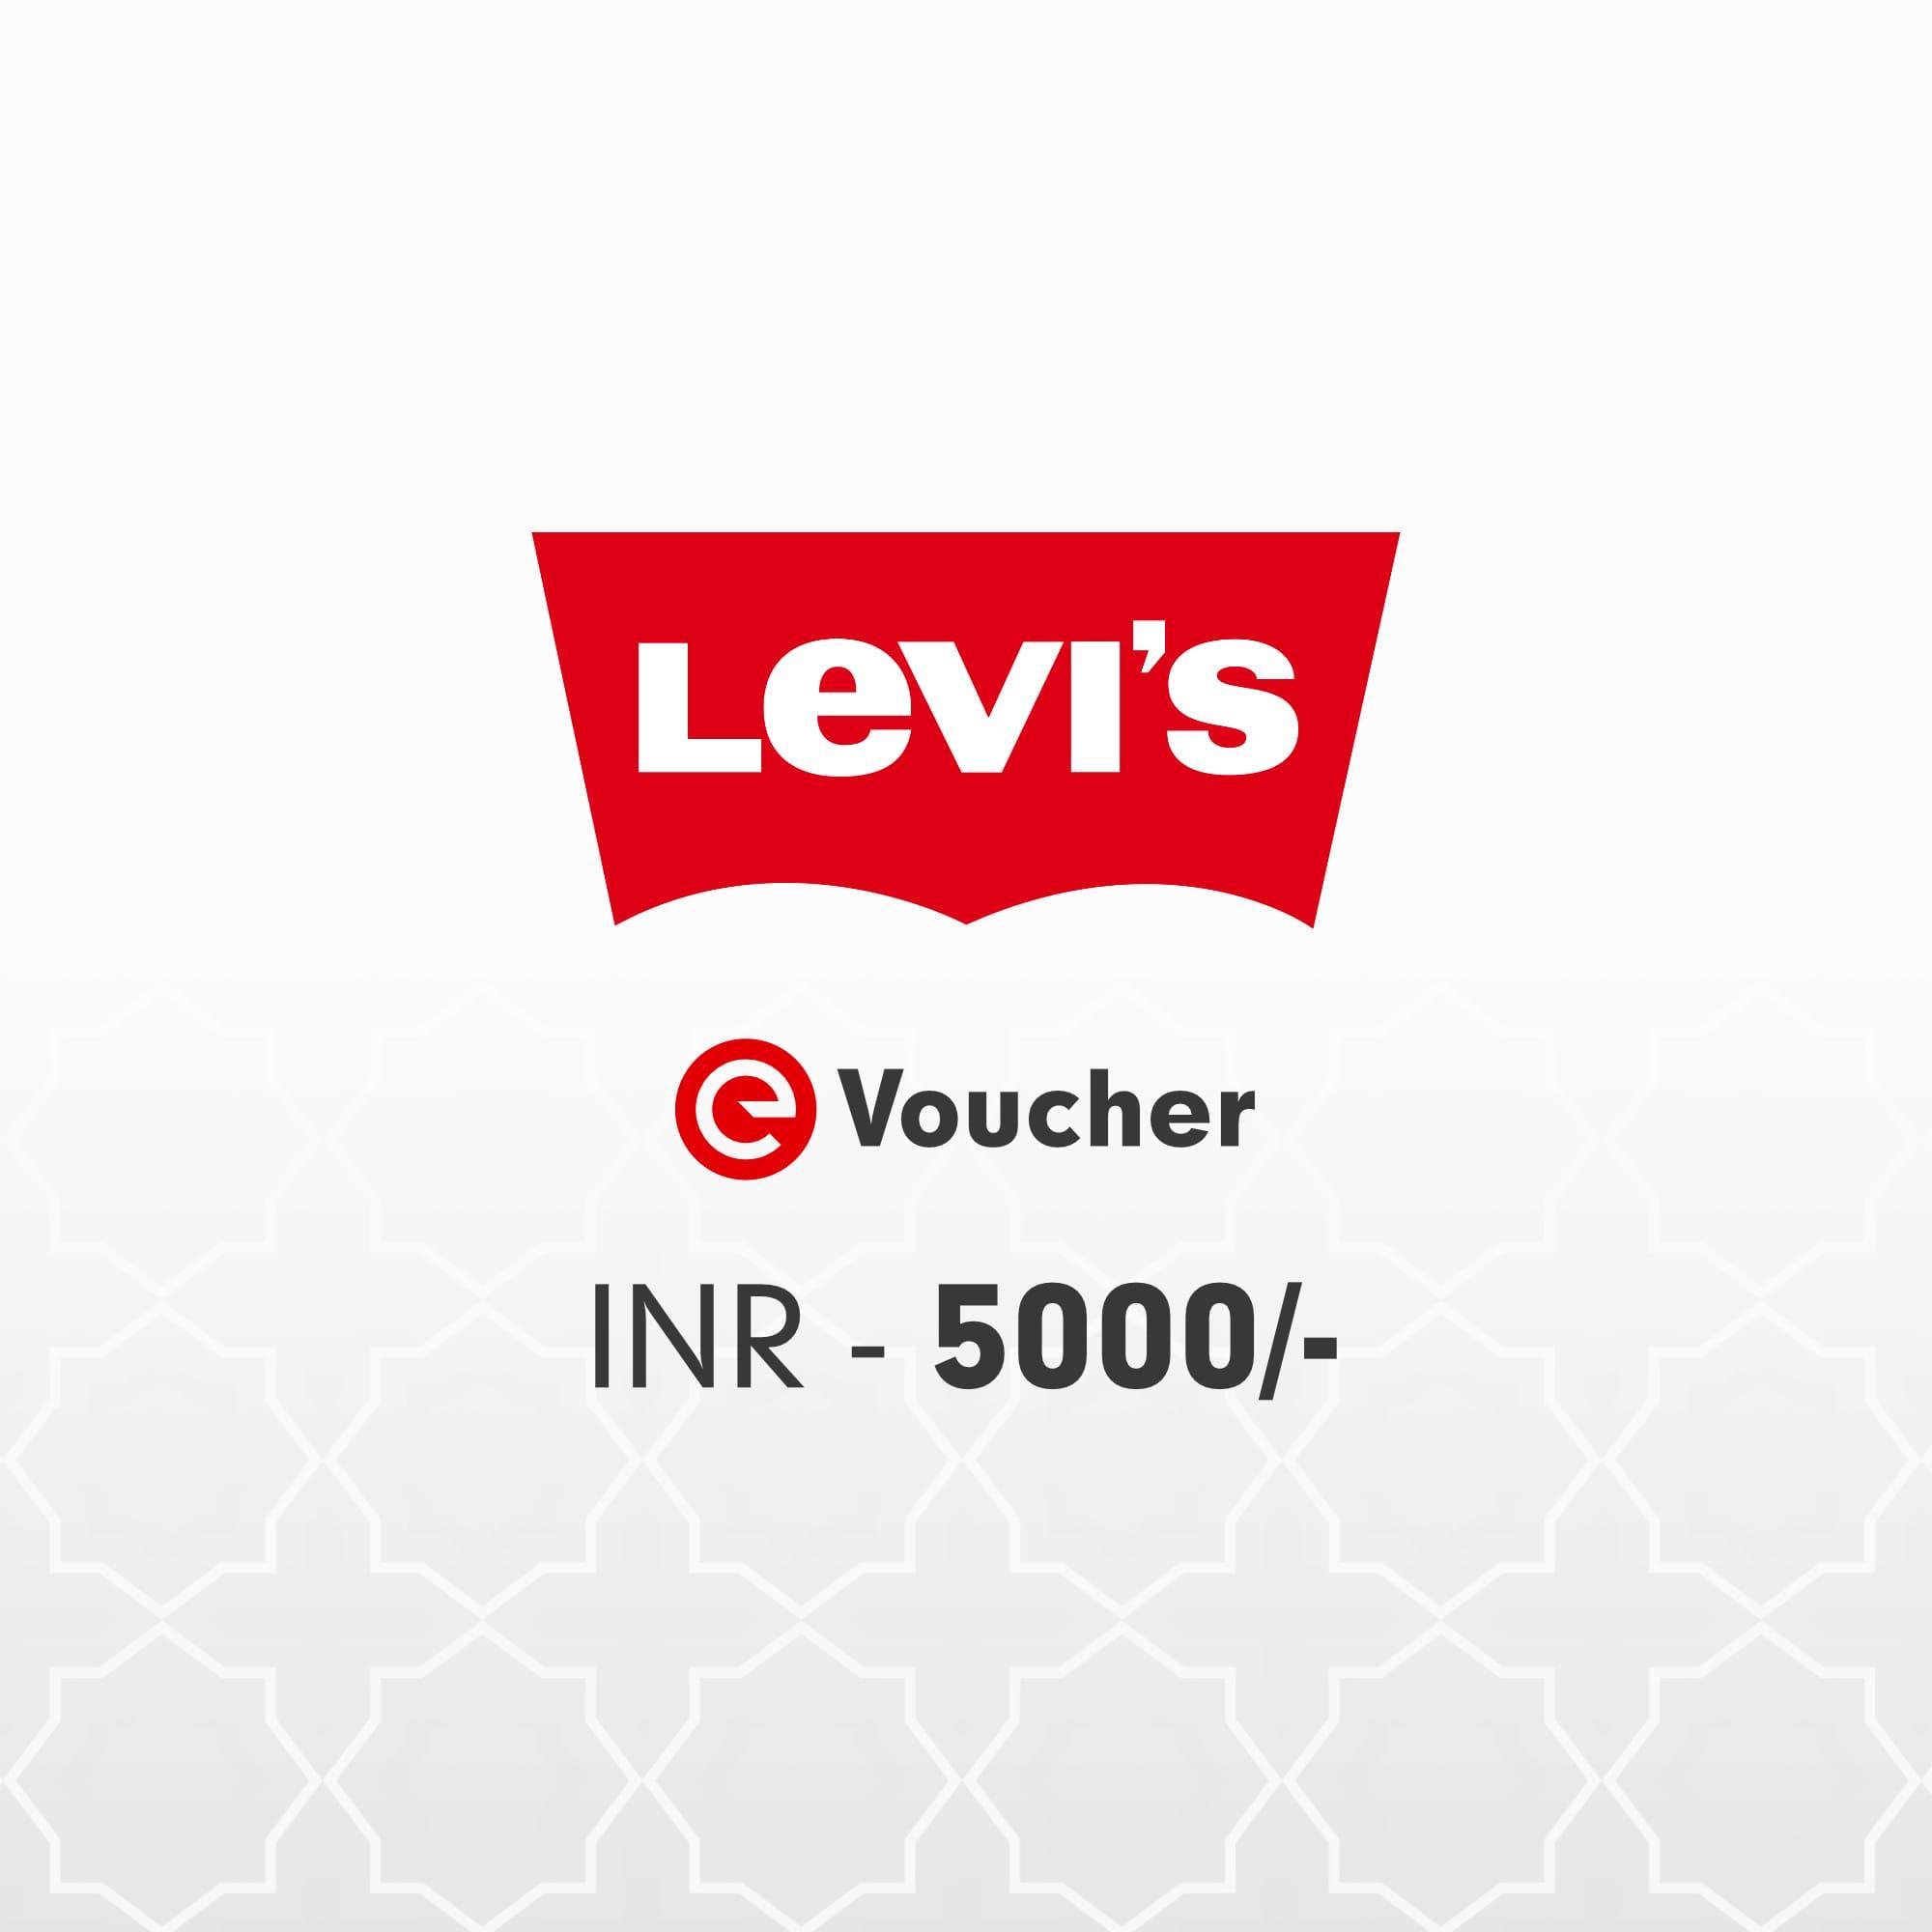 Levis E-Voucher Rs. 5000 | Levis Gift Cards